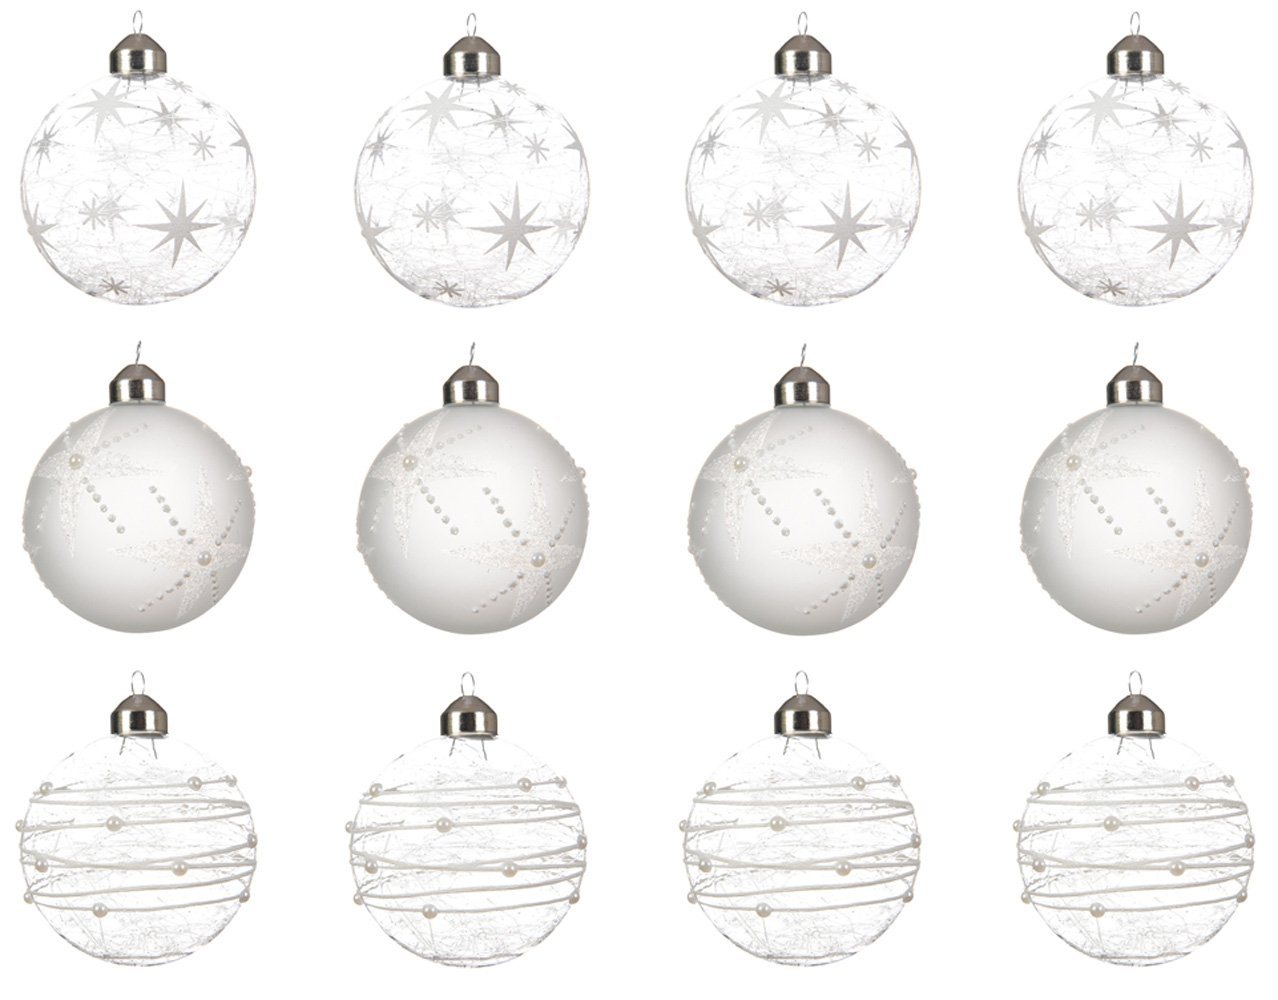 Decoris season decorations Weihnachtsbaumkugel, Weihnachtskugeln Glas Sterne Streifen 8cm weiß transparent, 12er Set von Decoris season decorations